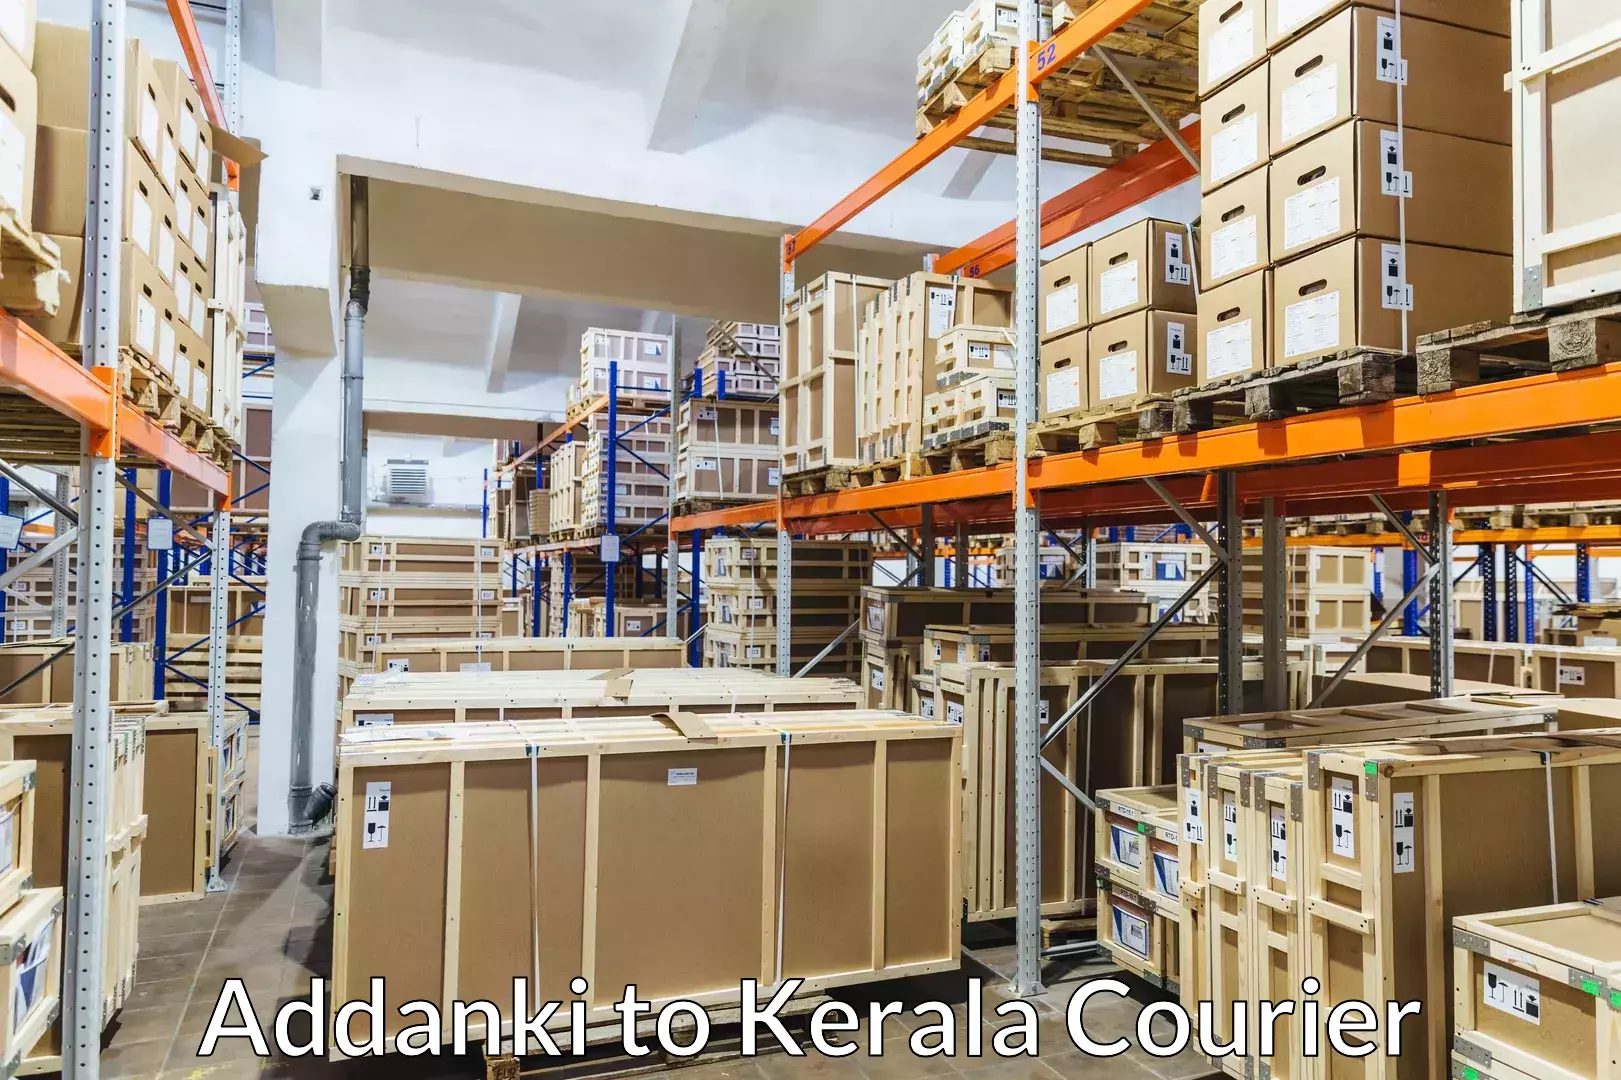 Furniture moving service Addanki to Kerala University Thiruvananthapuram